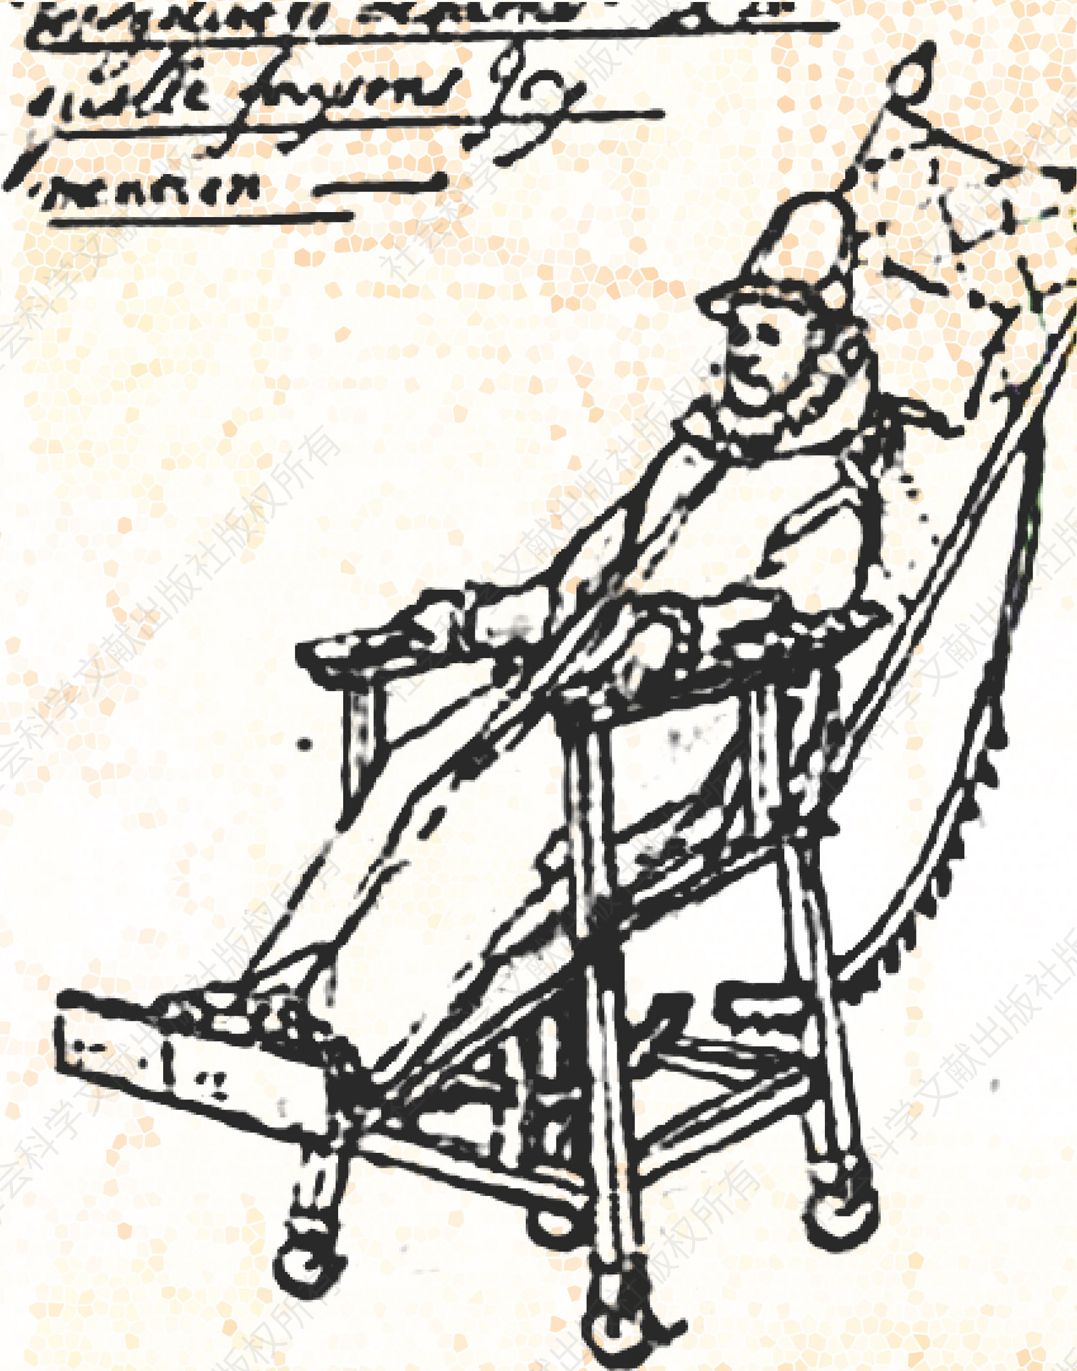 11.腓力二世的“病人躺椅”，让·莱尔米特作。腓力二世的寿命超过了他的王朝的其他任何一位成员，但在1595年之后，因为患有严重的关节炎，他不得不穿宽松服装，以减少对关节的摩擦，并经常躺在这张设计精巧的椅子上。它有各种机关，可以让他坐起来，也可以直接躺下打盹。他在各处宫殿之间旅行的时候也坐这张椅子。有了它，腓力二世就可以继续治理他的世界帝国，直到他在1598年最后一次病倒。